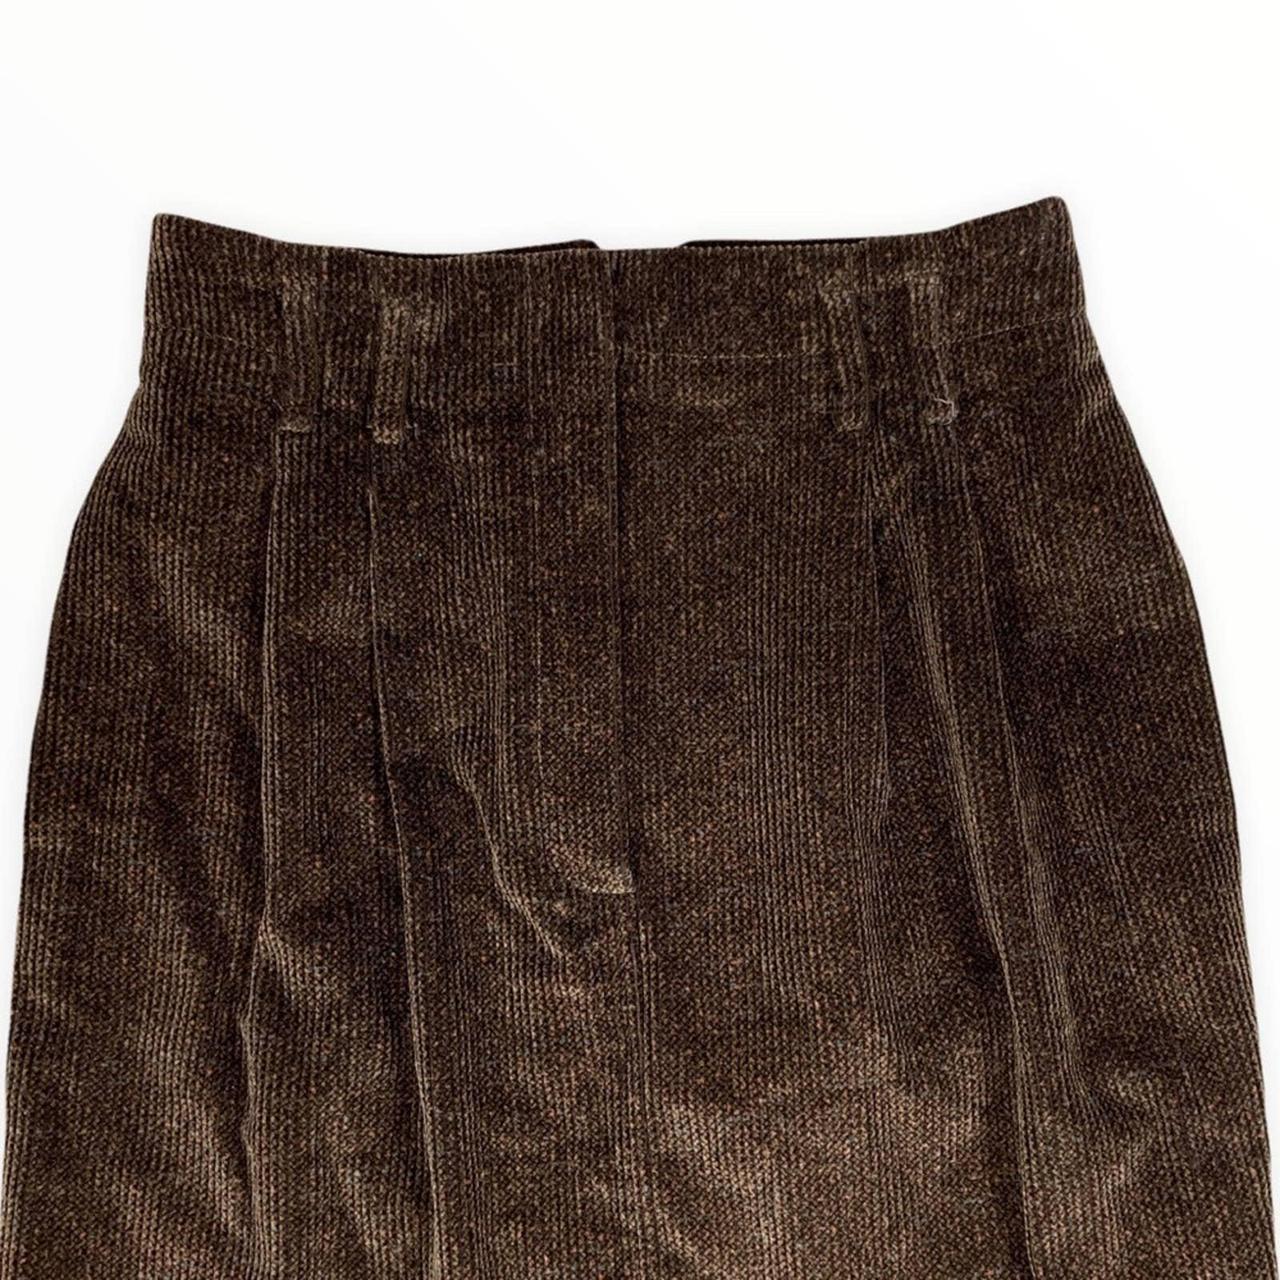 Product Image 3 - Vintage skirt 👗

Vintage Dark Academia